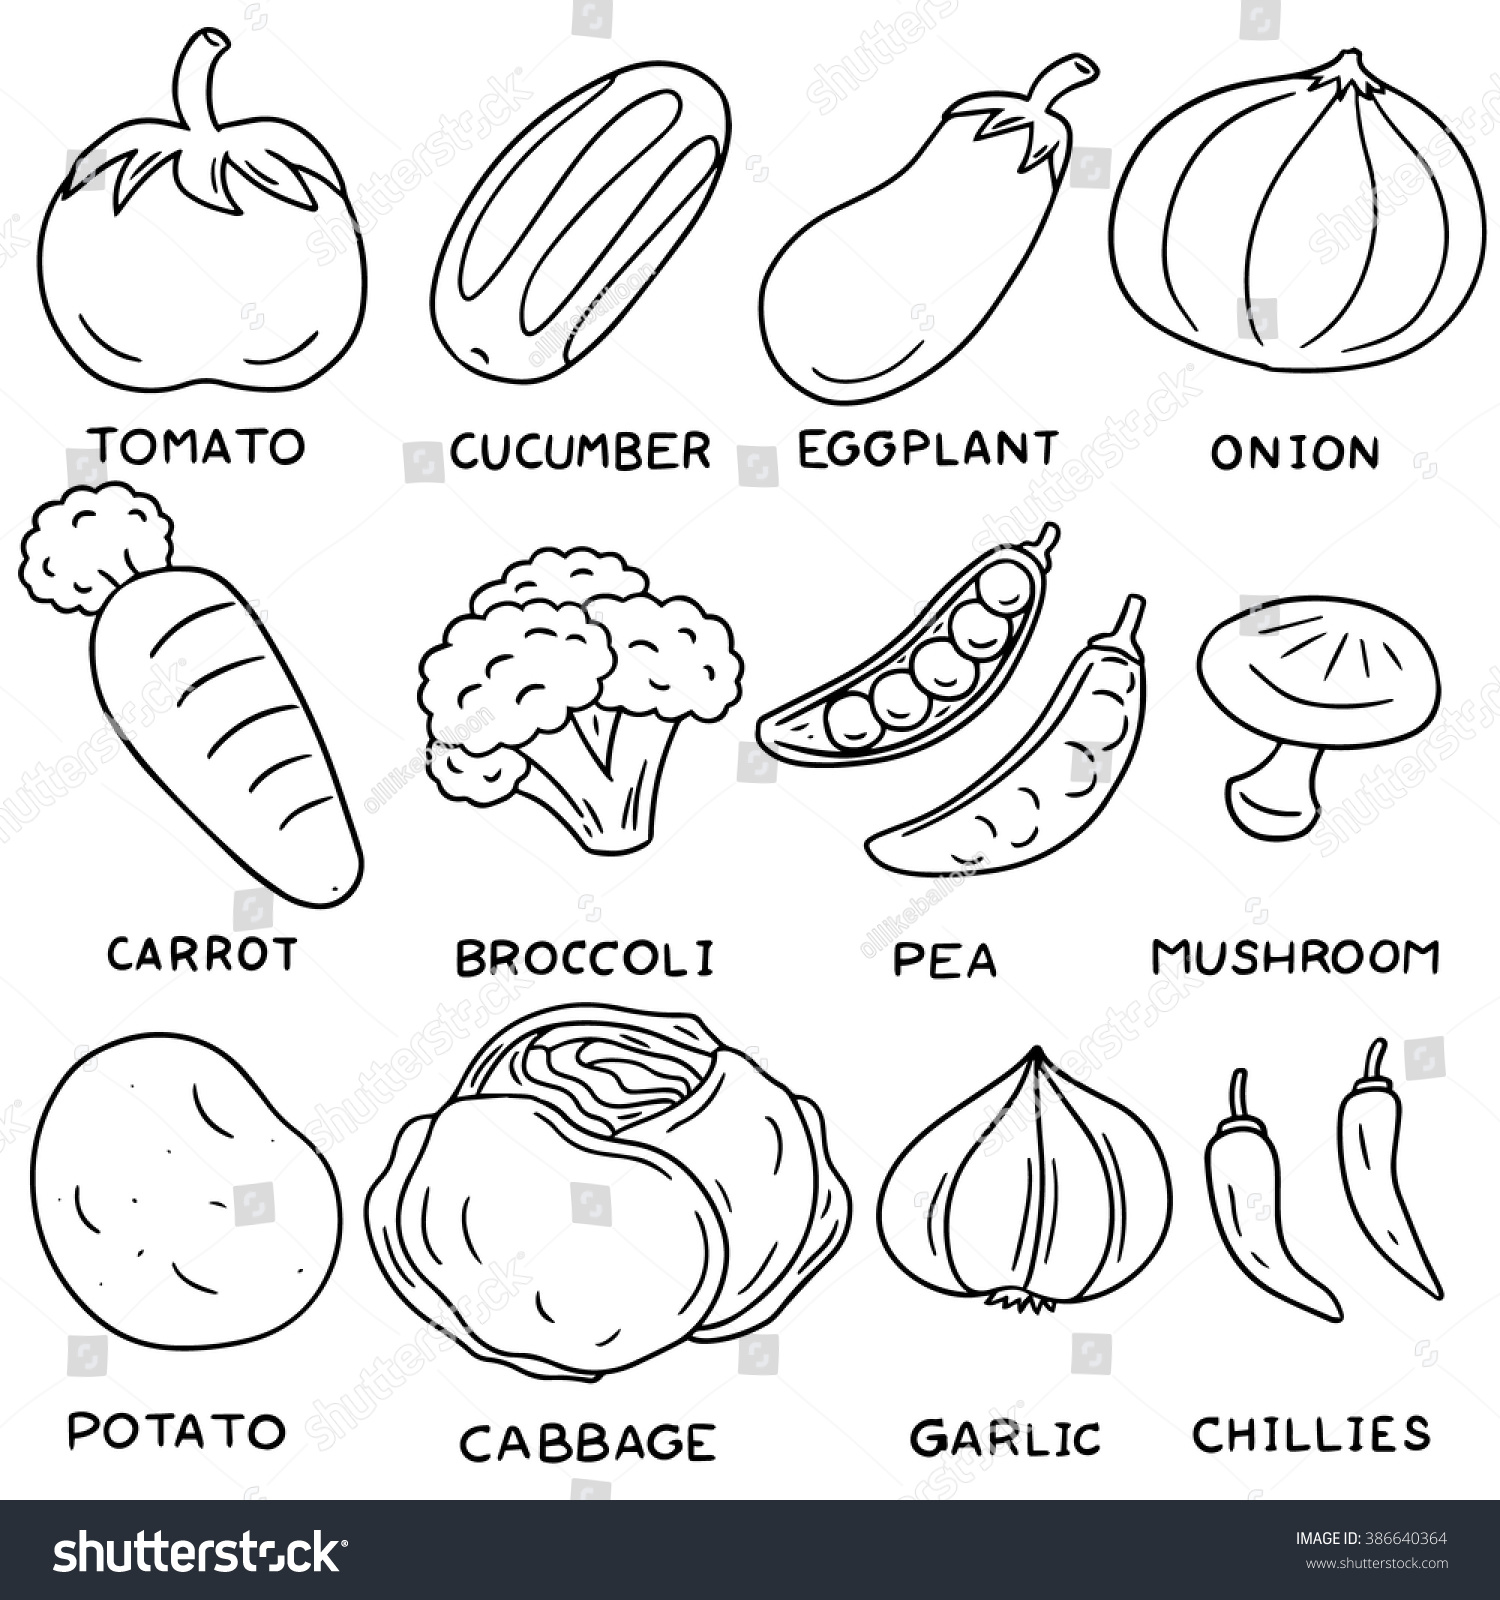 Овощи на английском языке для детей раскраска